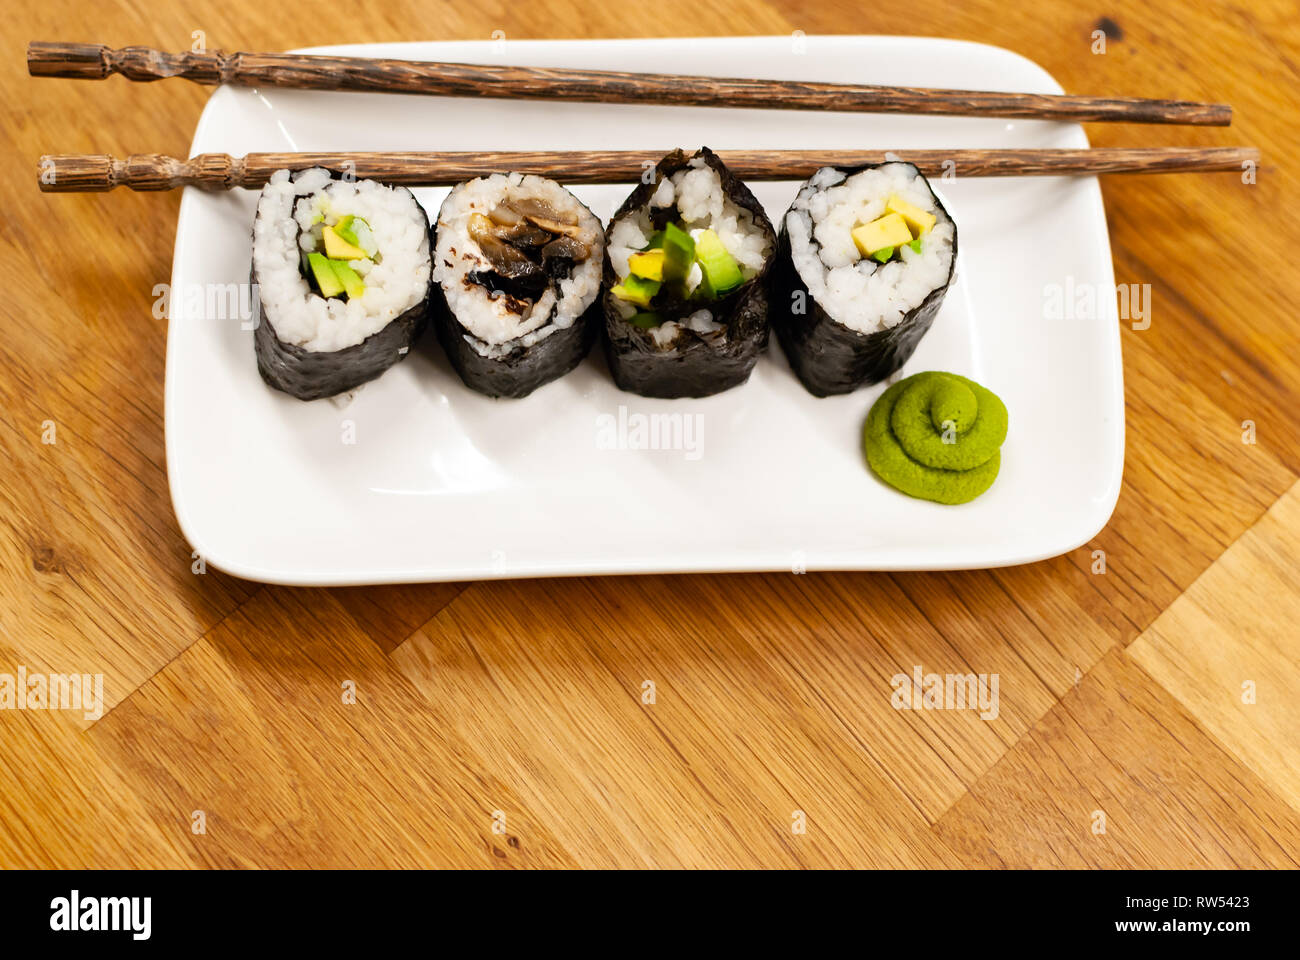 Vue de côté des rouleaux de sushi végétaliens rempli avec de l'avocat sur une petite plaque sur une table en bois avec de la sauce soja, wasabi et gingembre Banque D'Images